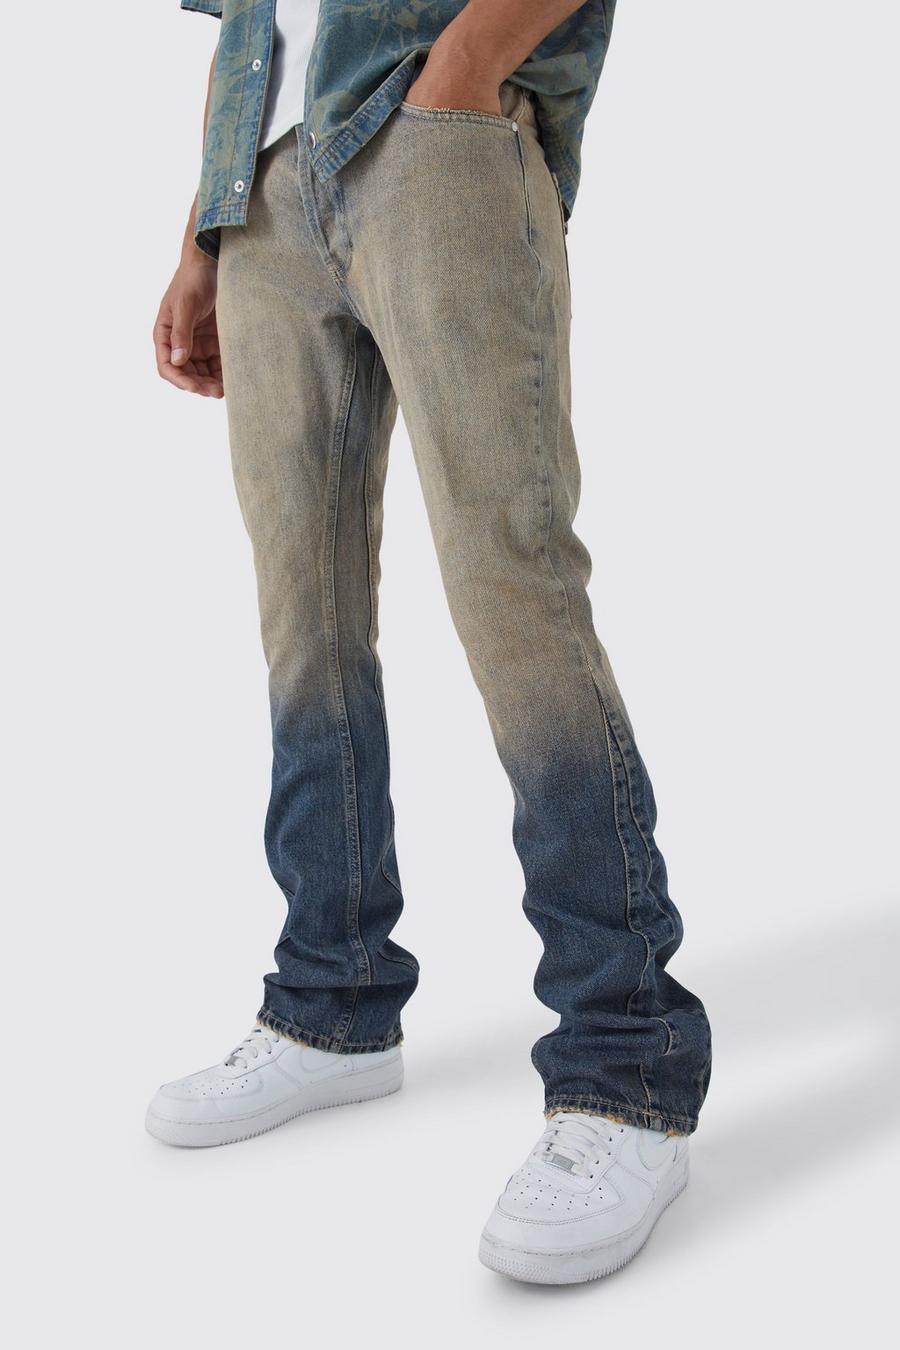 Jeans Tall Slim Fit in denim rigido sfumato a zampa con inserti, Mid blue